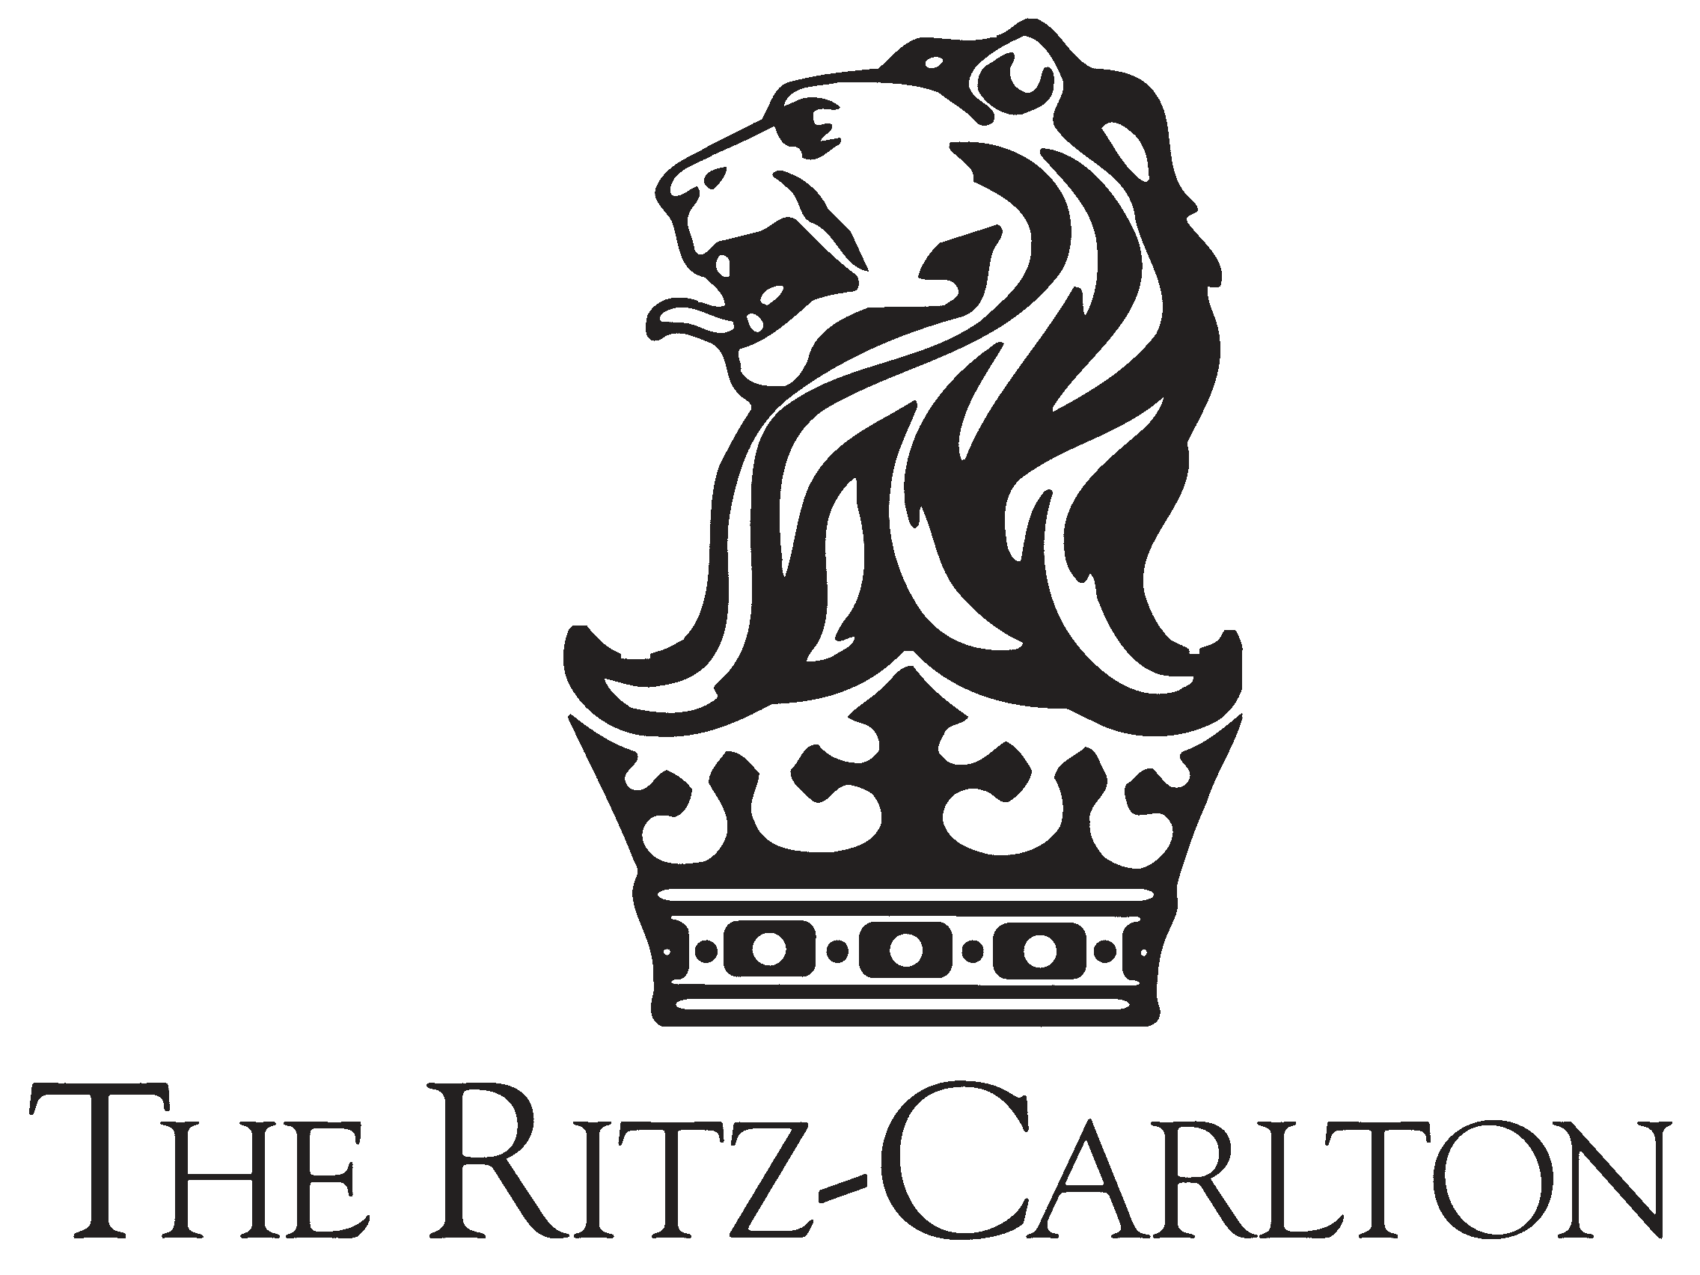 Ritz-Carlton-logo-and-wordmark-e1528697975401